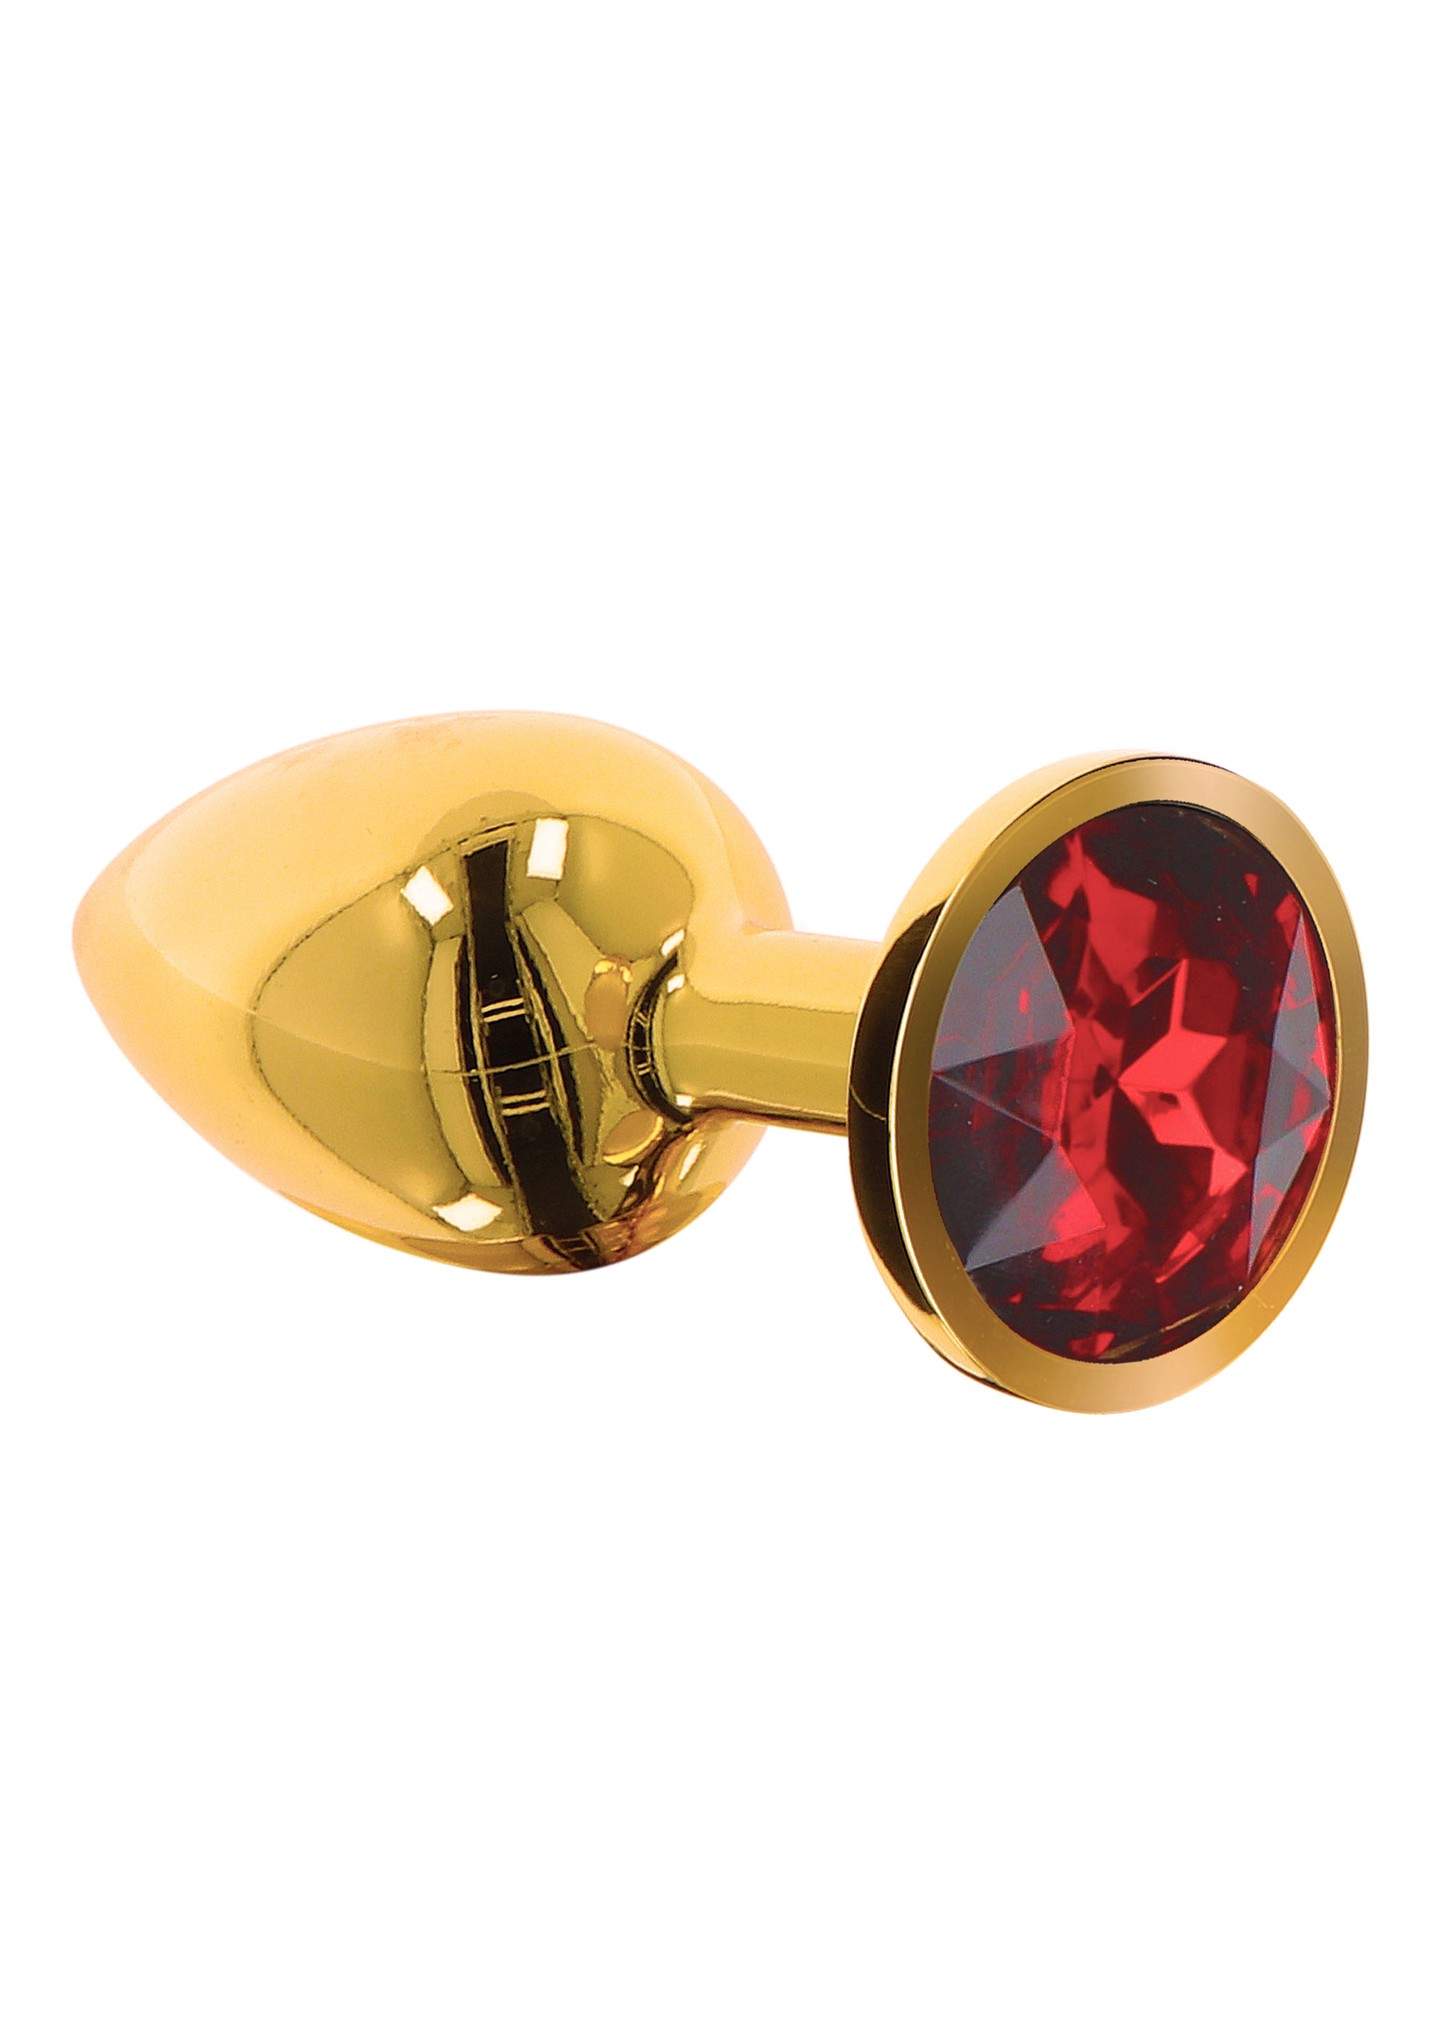 Elegancki złoty korew z czerwonym kryształkiem- rozmiar M